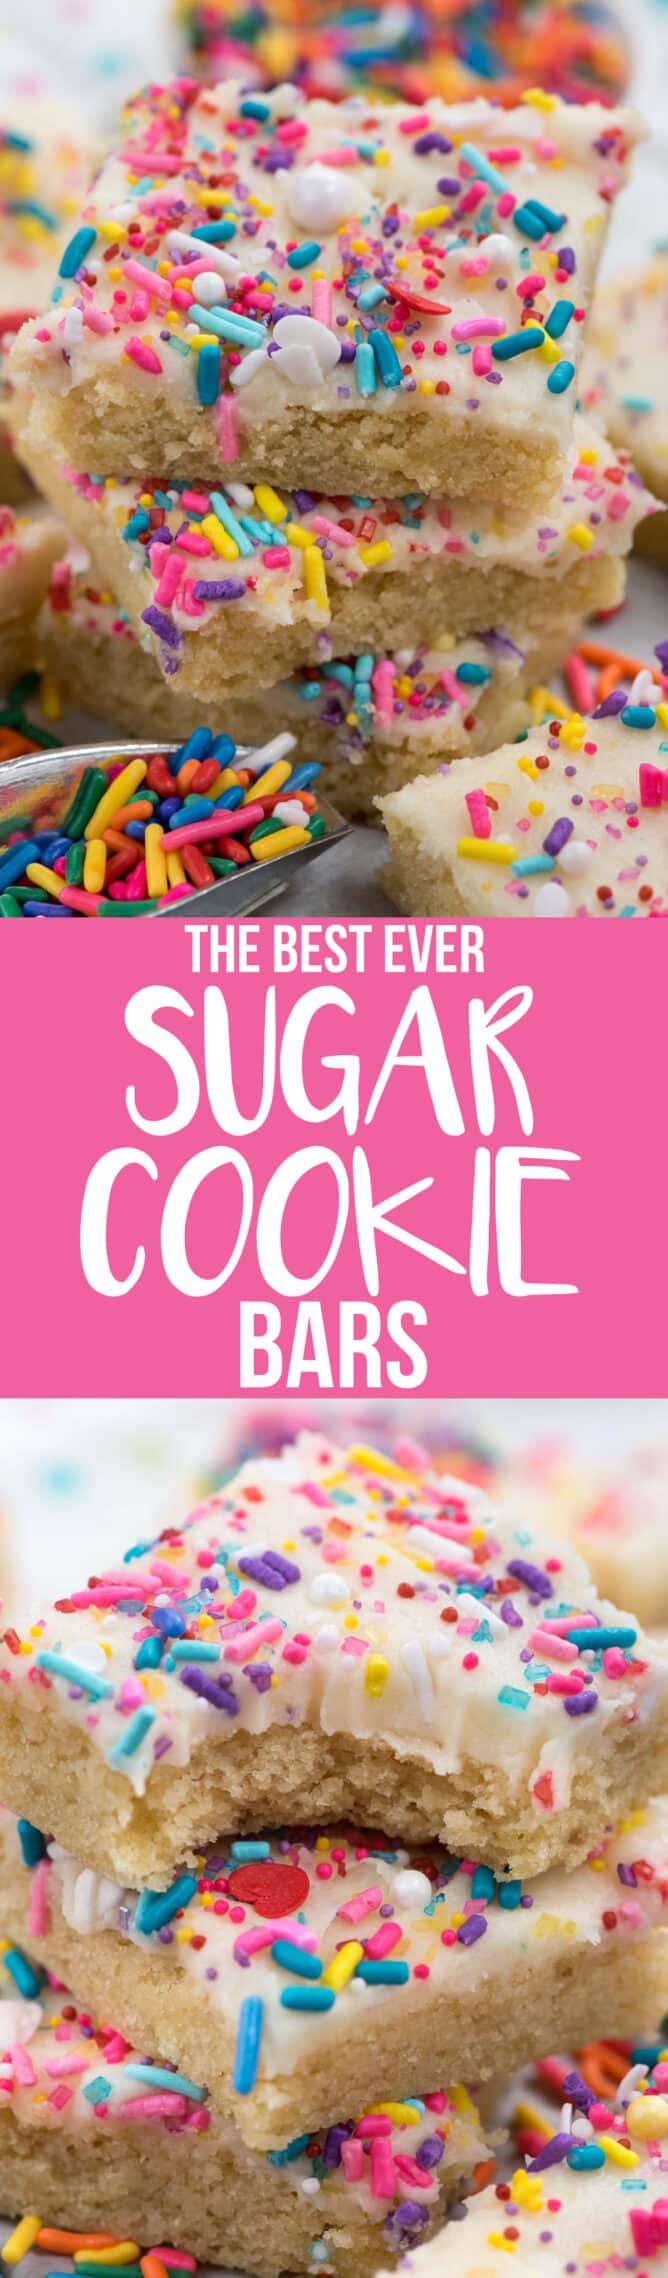 sugar cookie bar collage